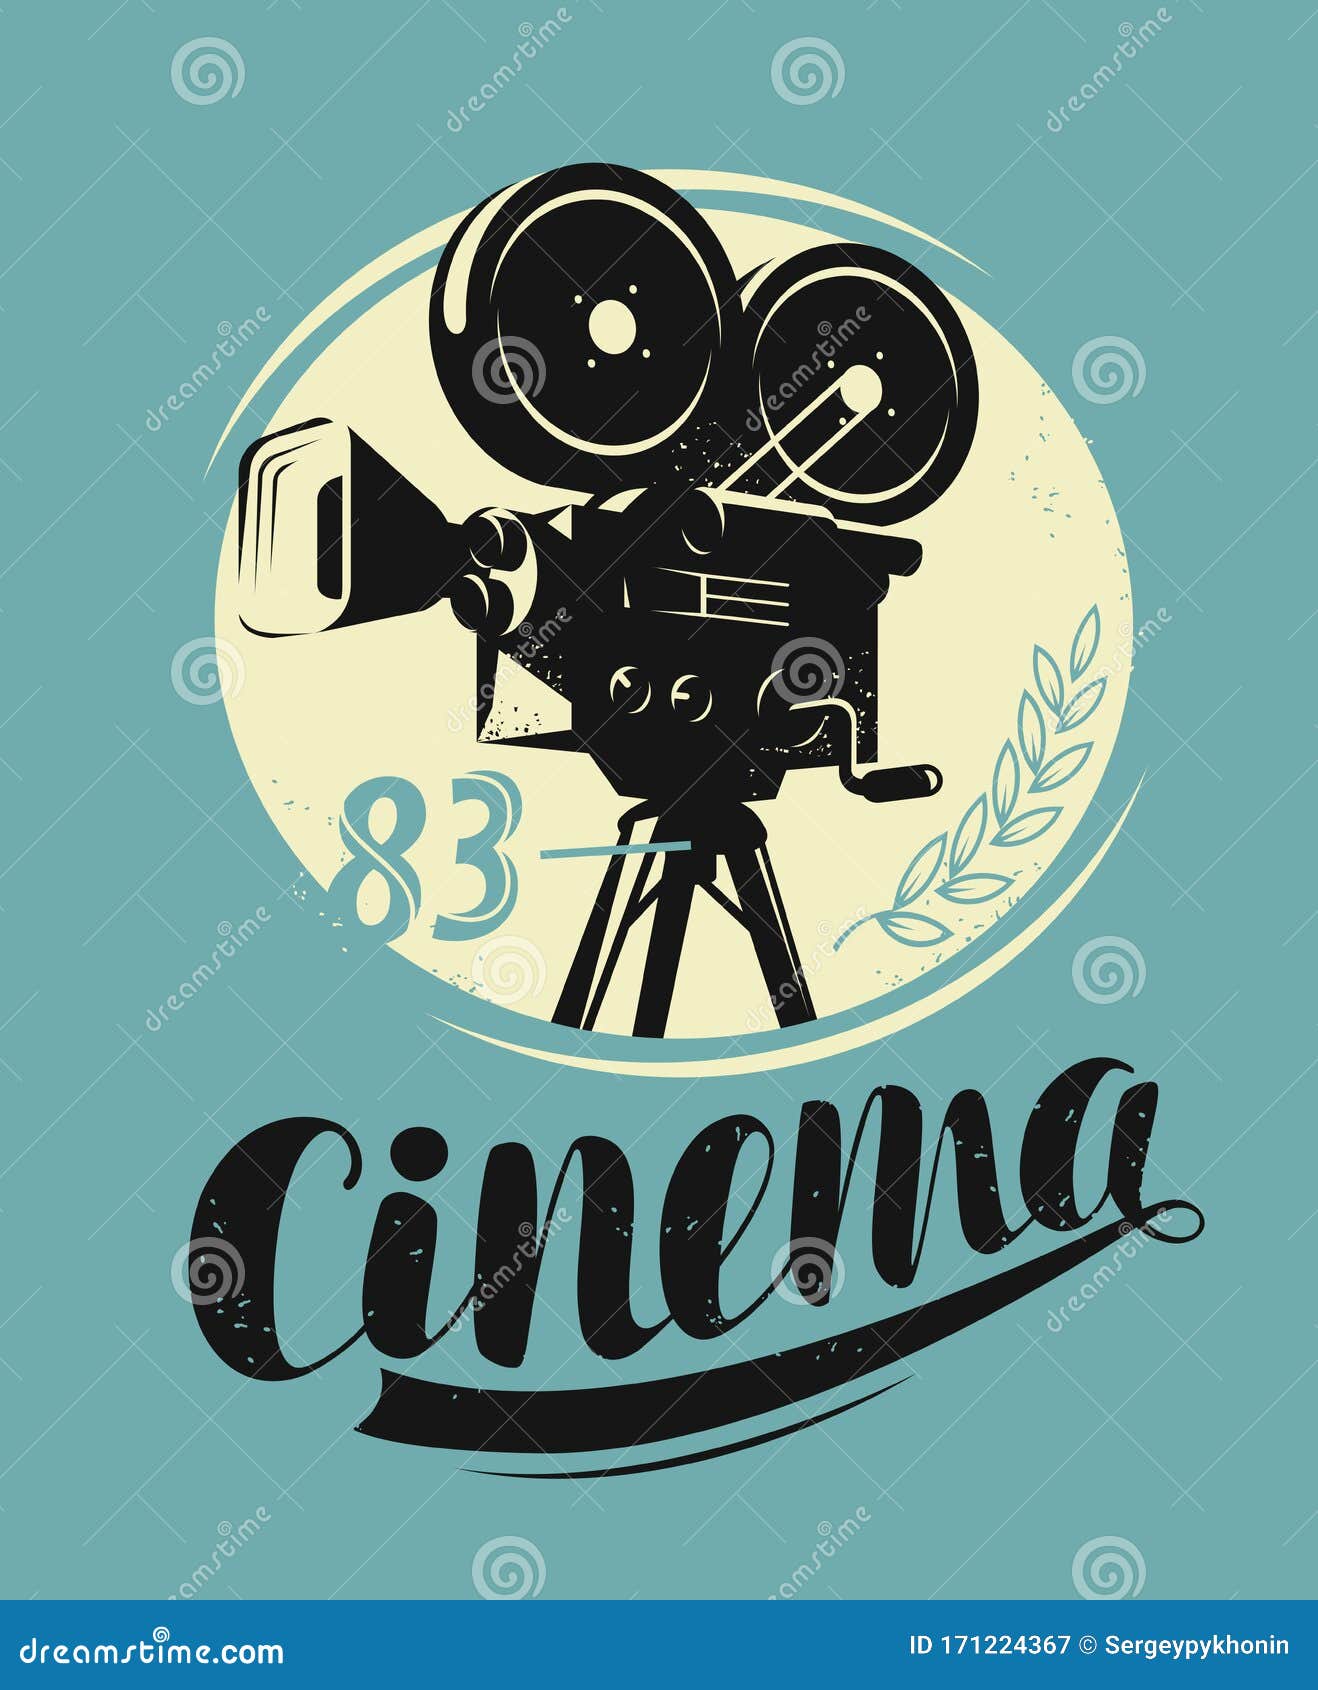 Cinema Poster. Movie Camera, Projector Retro Vector Stock Vector ...